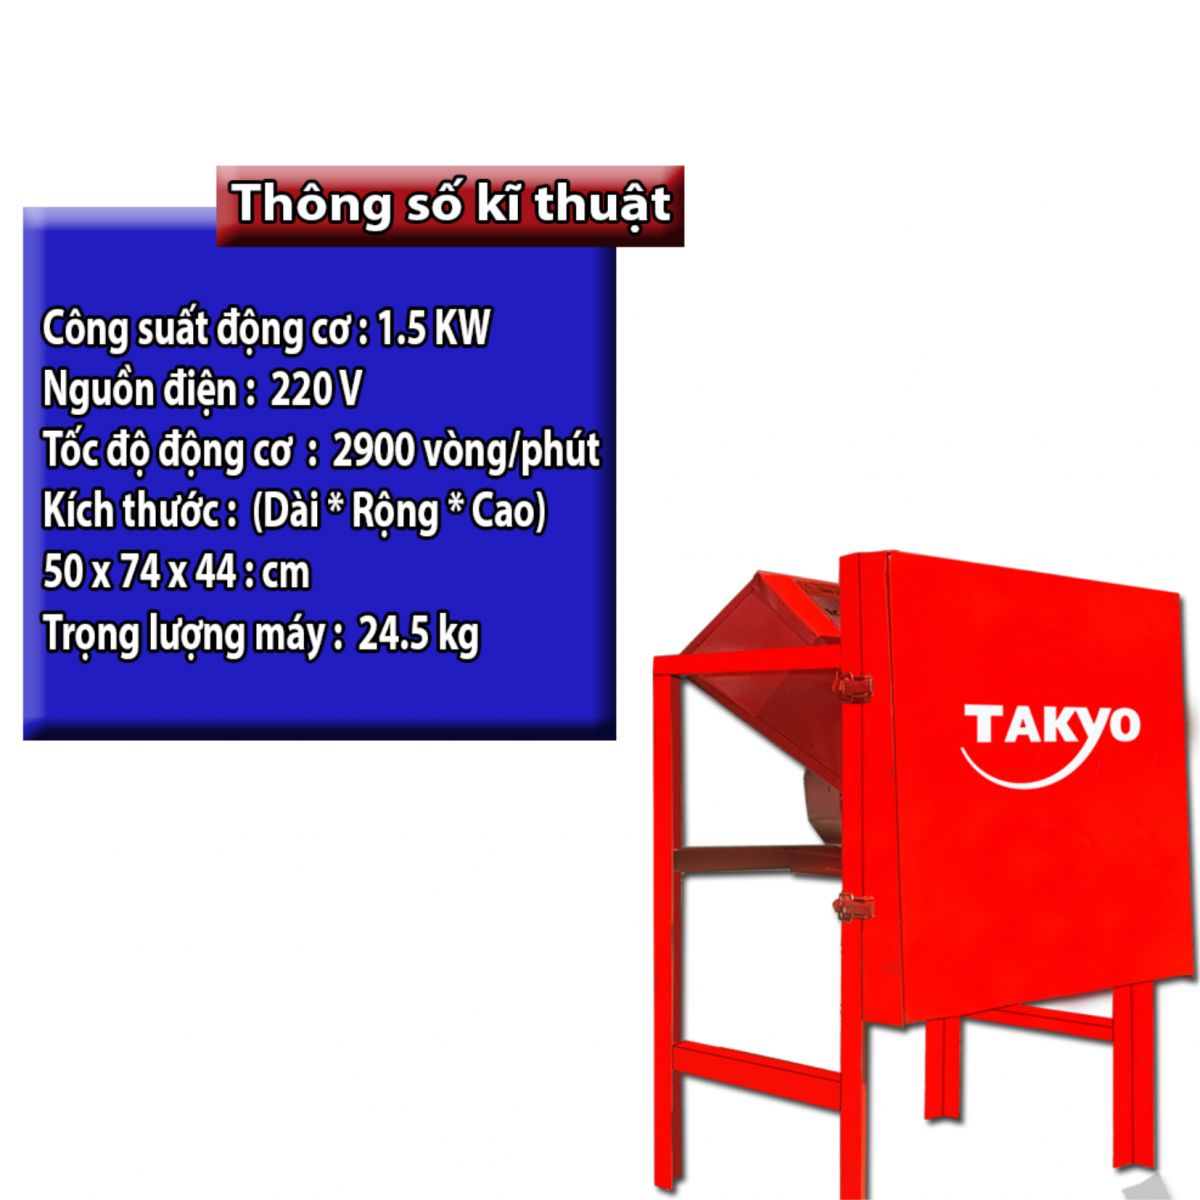 Thông số kỹ thuật của máy thái cỏ voi Takyo TK 15 bao gồm: công suất lên tới 1.5 kW, năng suất đạt được từ 400-500 kg/ giờ, sử dụng mô-tơ Toàn Phát cực kỳ chất lượng